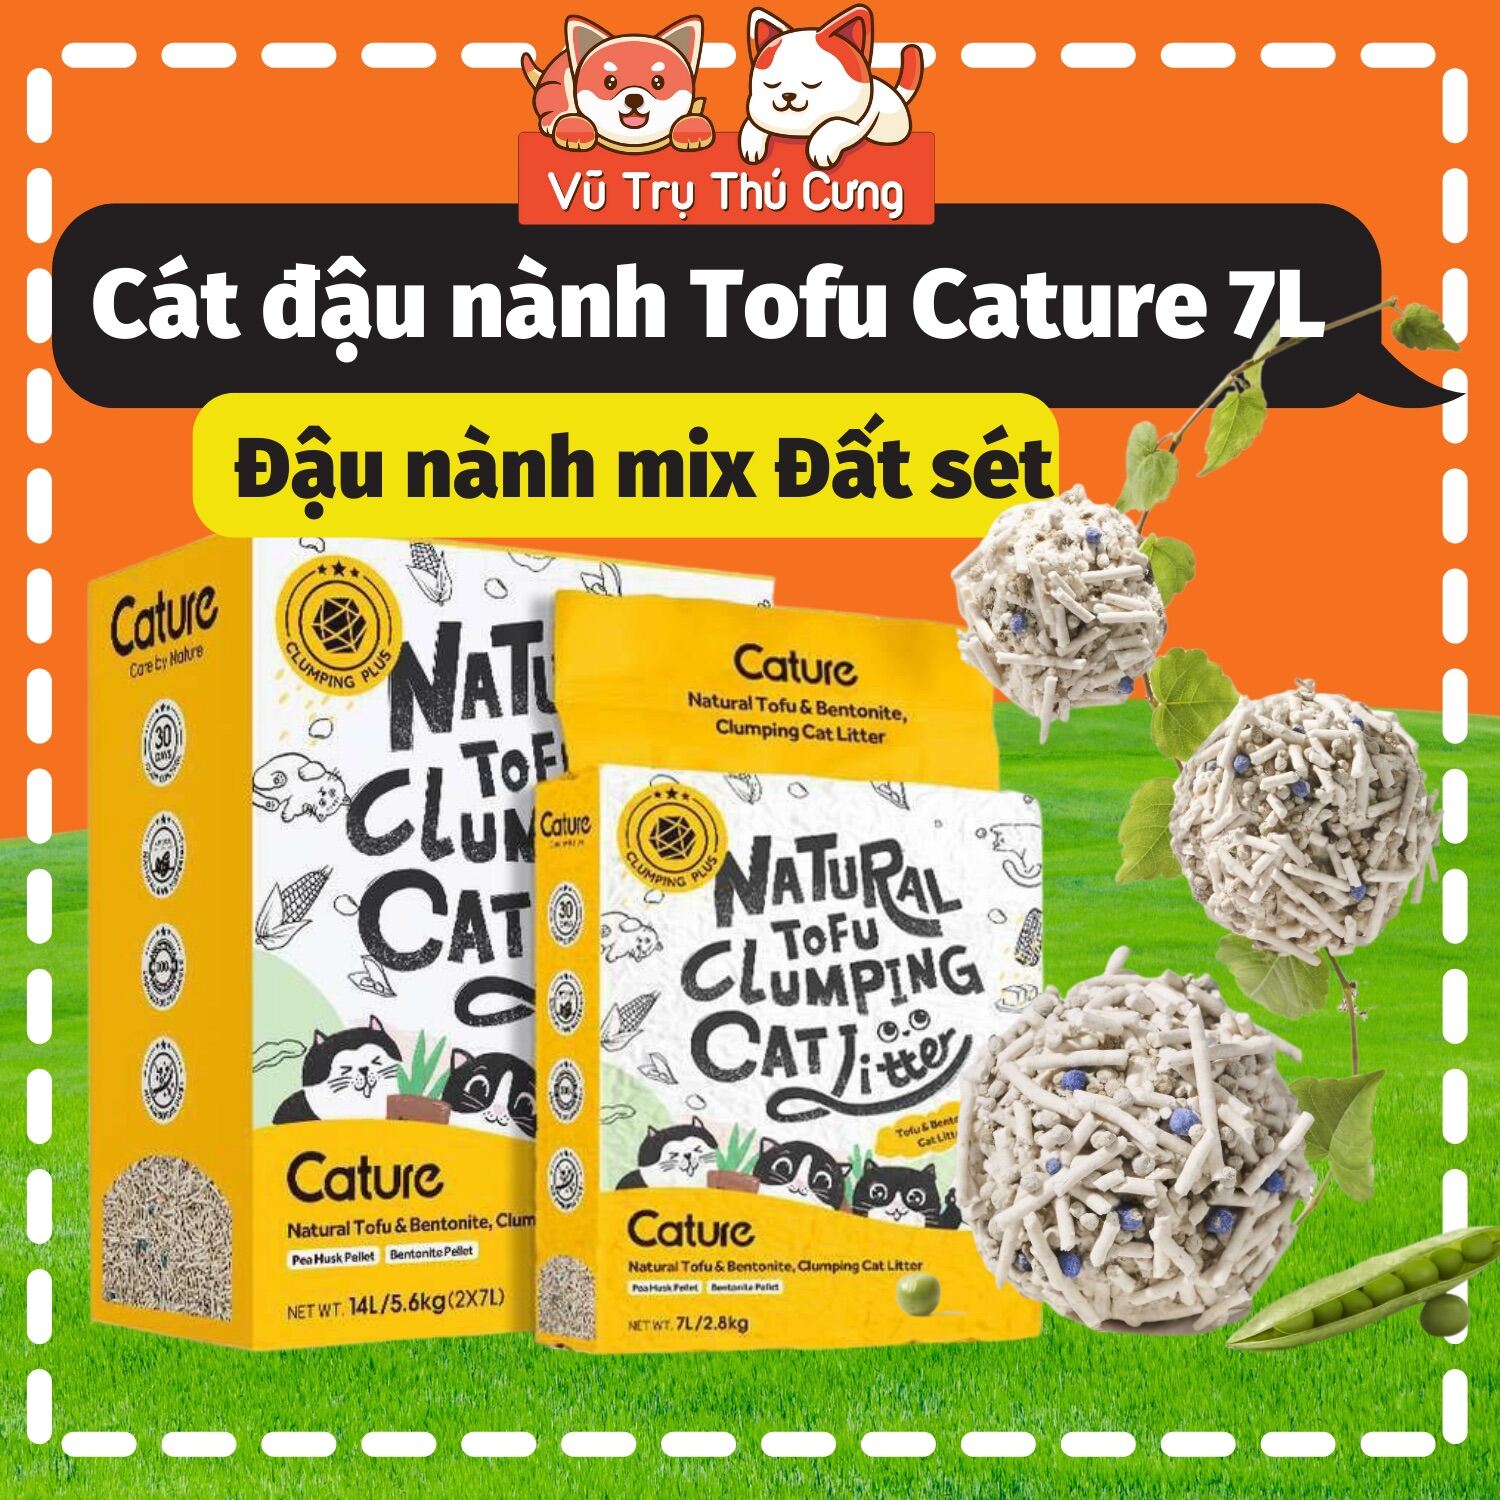 Cát Đậu nành Tofu Cature 7L, đậu nành mix đất sét, mẫu mới 2022 thumbnail